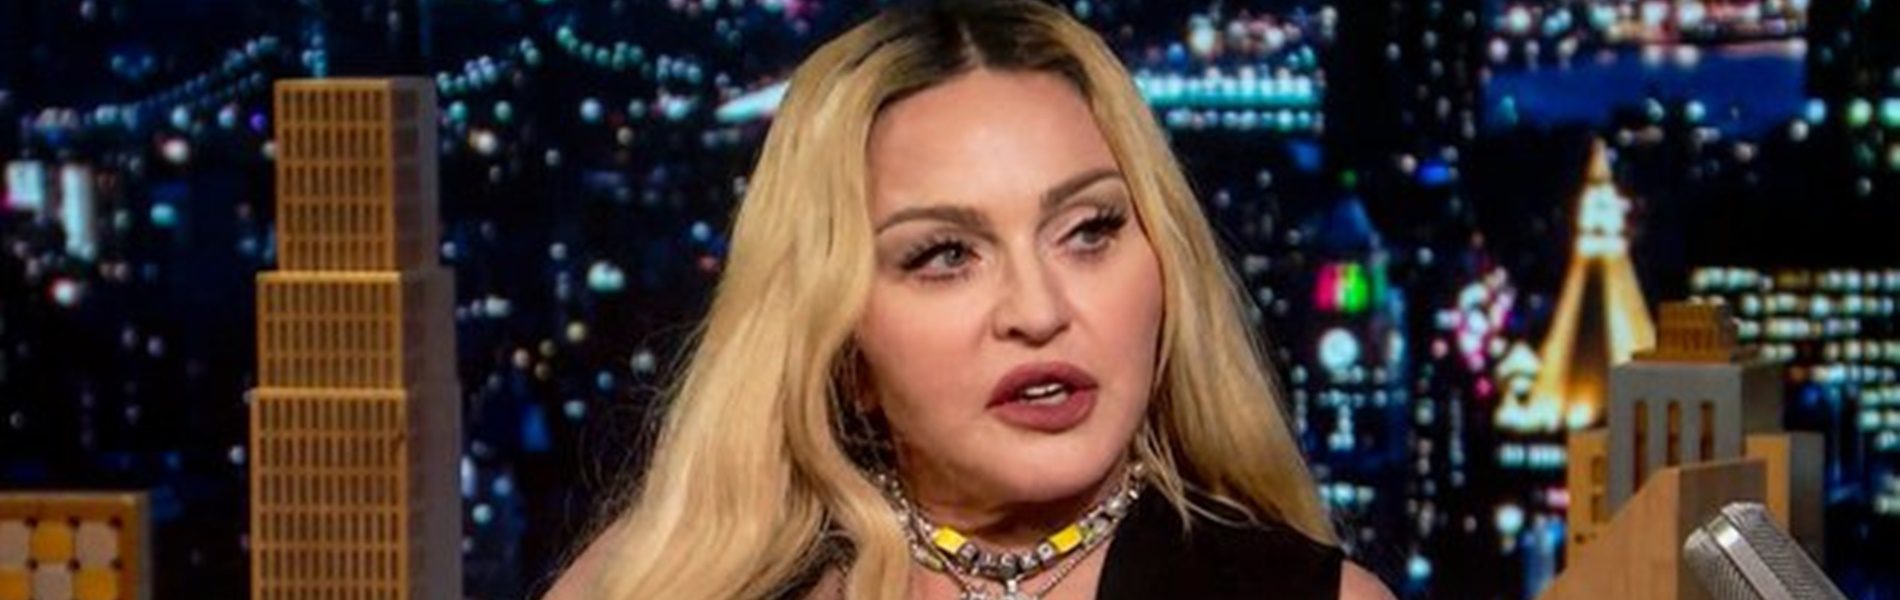 Így néz ki most Madonna lánya: botrányos felvételeken a 25 éves Lola